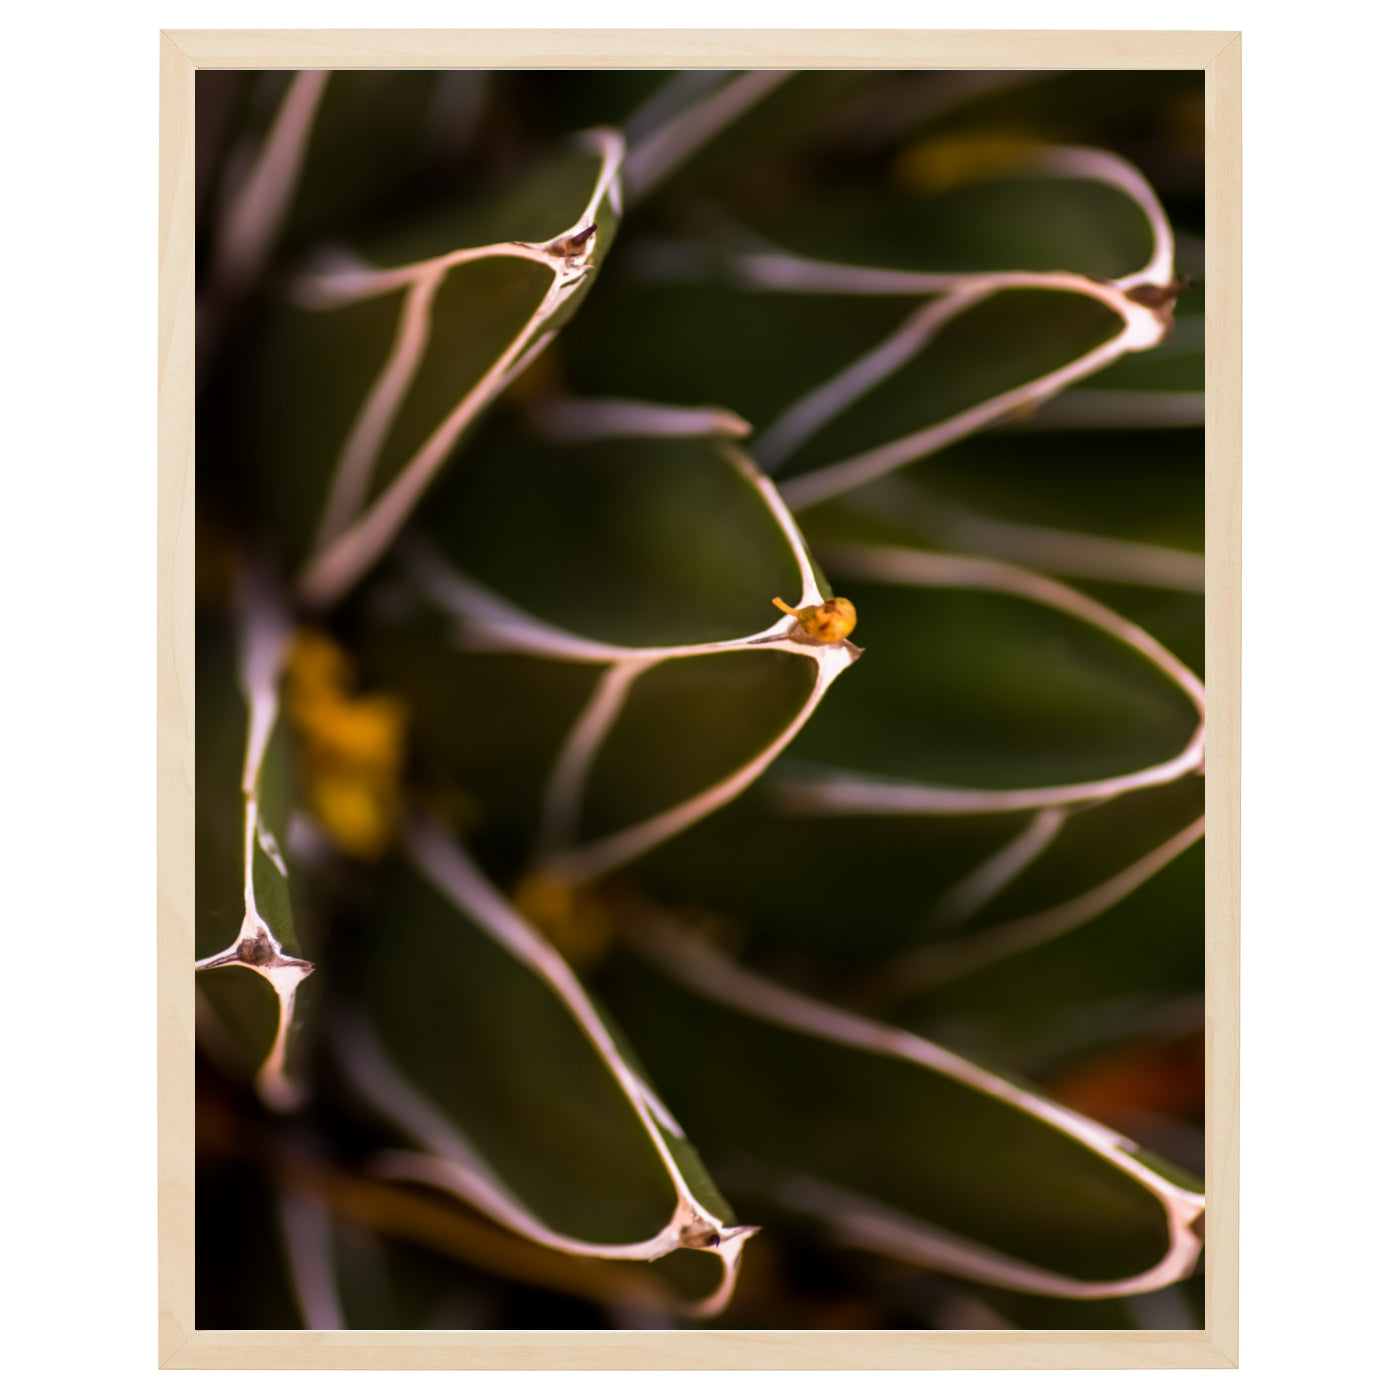 Close-up af grønne ørkenplanter med tætte blade og stængler arrangeret i en asymmetrisk mønster. Billedet viser detaljer af ørkenplanternes skønhed og kompleksitet med kontrasterende lys og skygge. Grønne farvetoner dominerer billedet, og skyggerne skaber en interessant og dynamisk kontrast. Alt i alt et imponerende billede af ørkenplanternes frodige og overraskende skønhed.